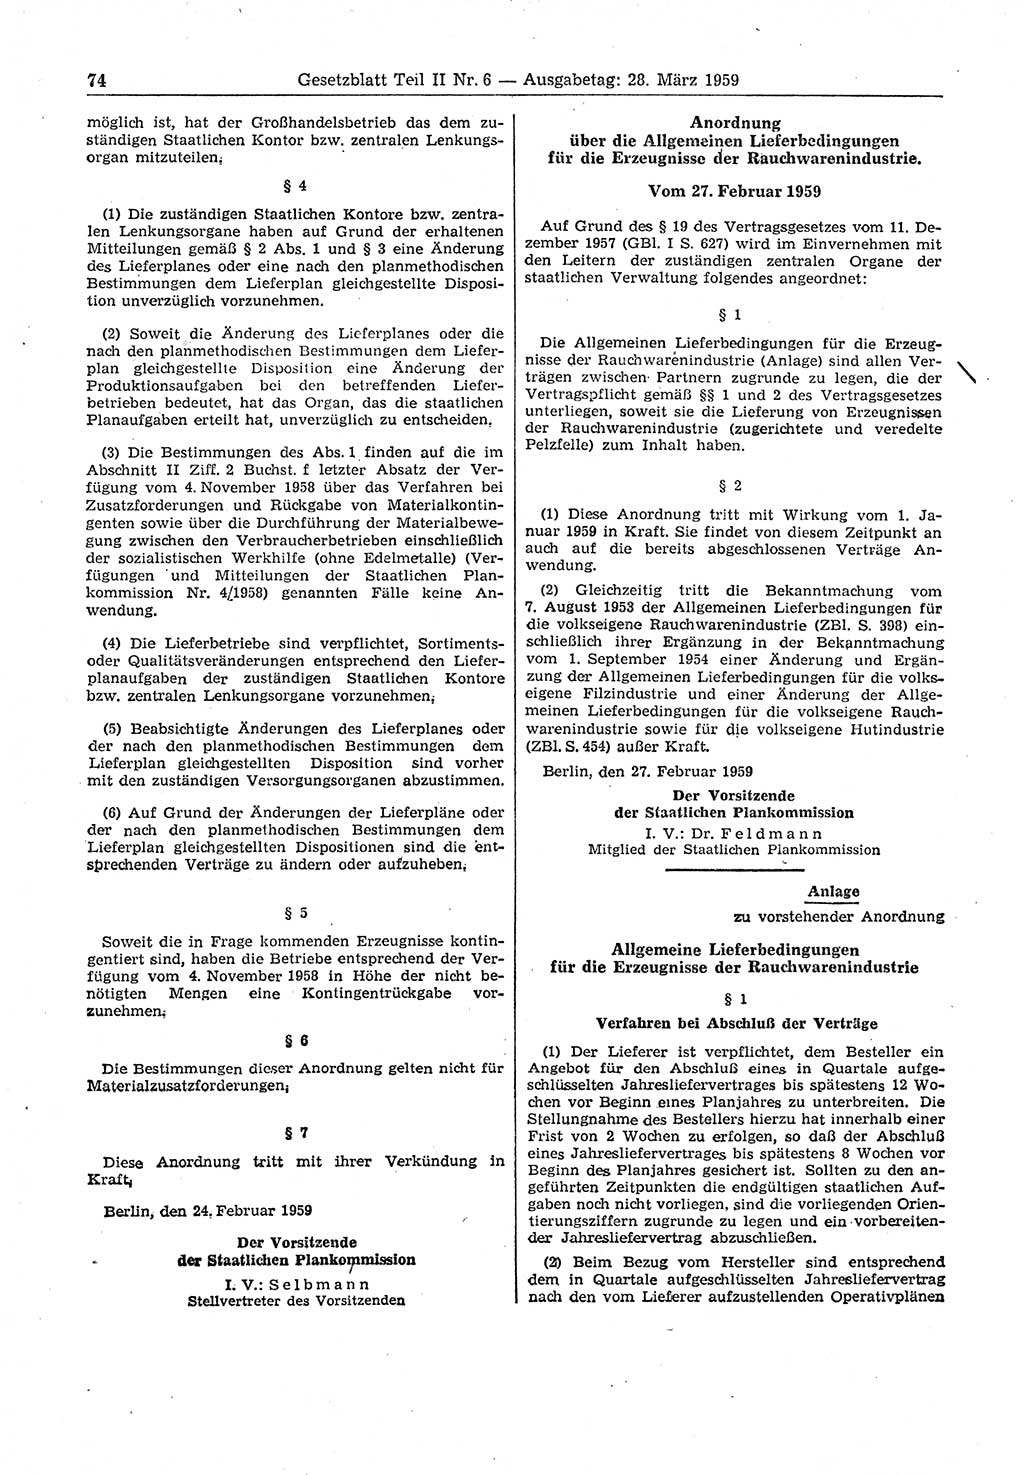 Gesetzblatt (GBl.) der Deutschen Demokratischen Republik (DDR) Teil ⅠⅠ 1959, Seite 74 (GBl. DDR ⅠⅠ 1959, S. 74)